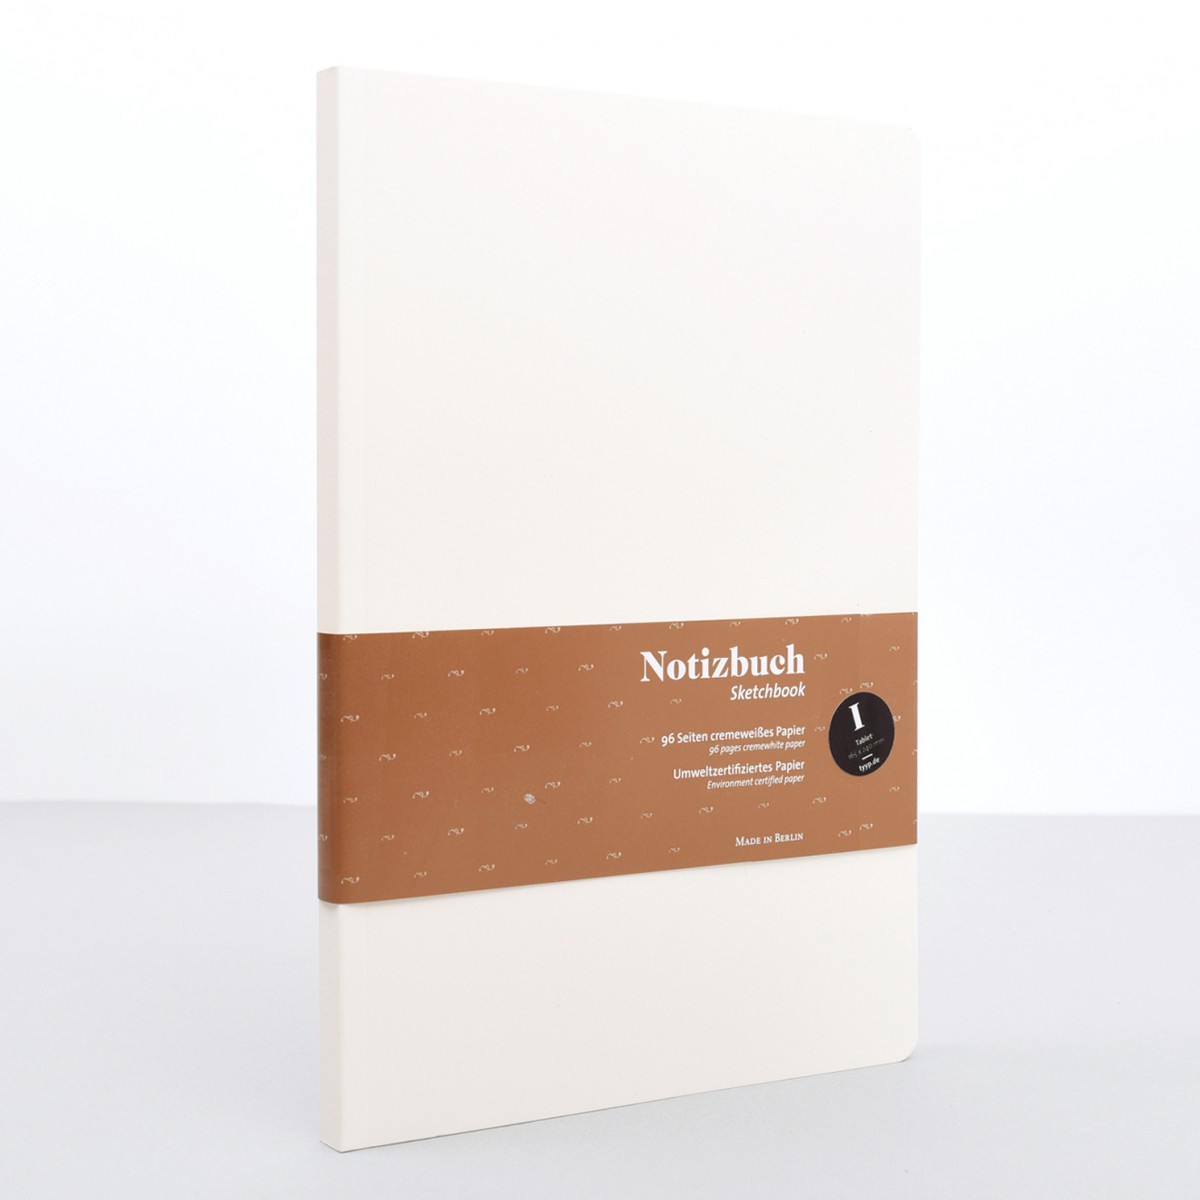 Notizbuch i Softcover - Tablet